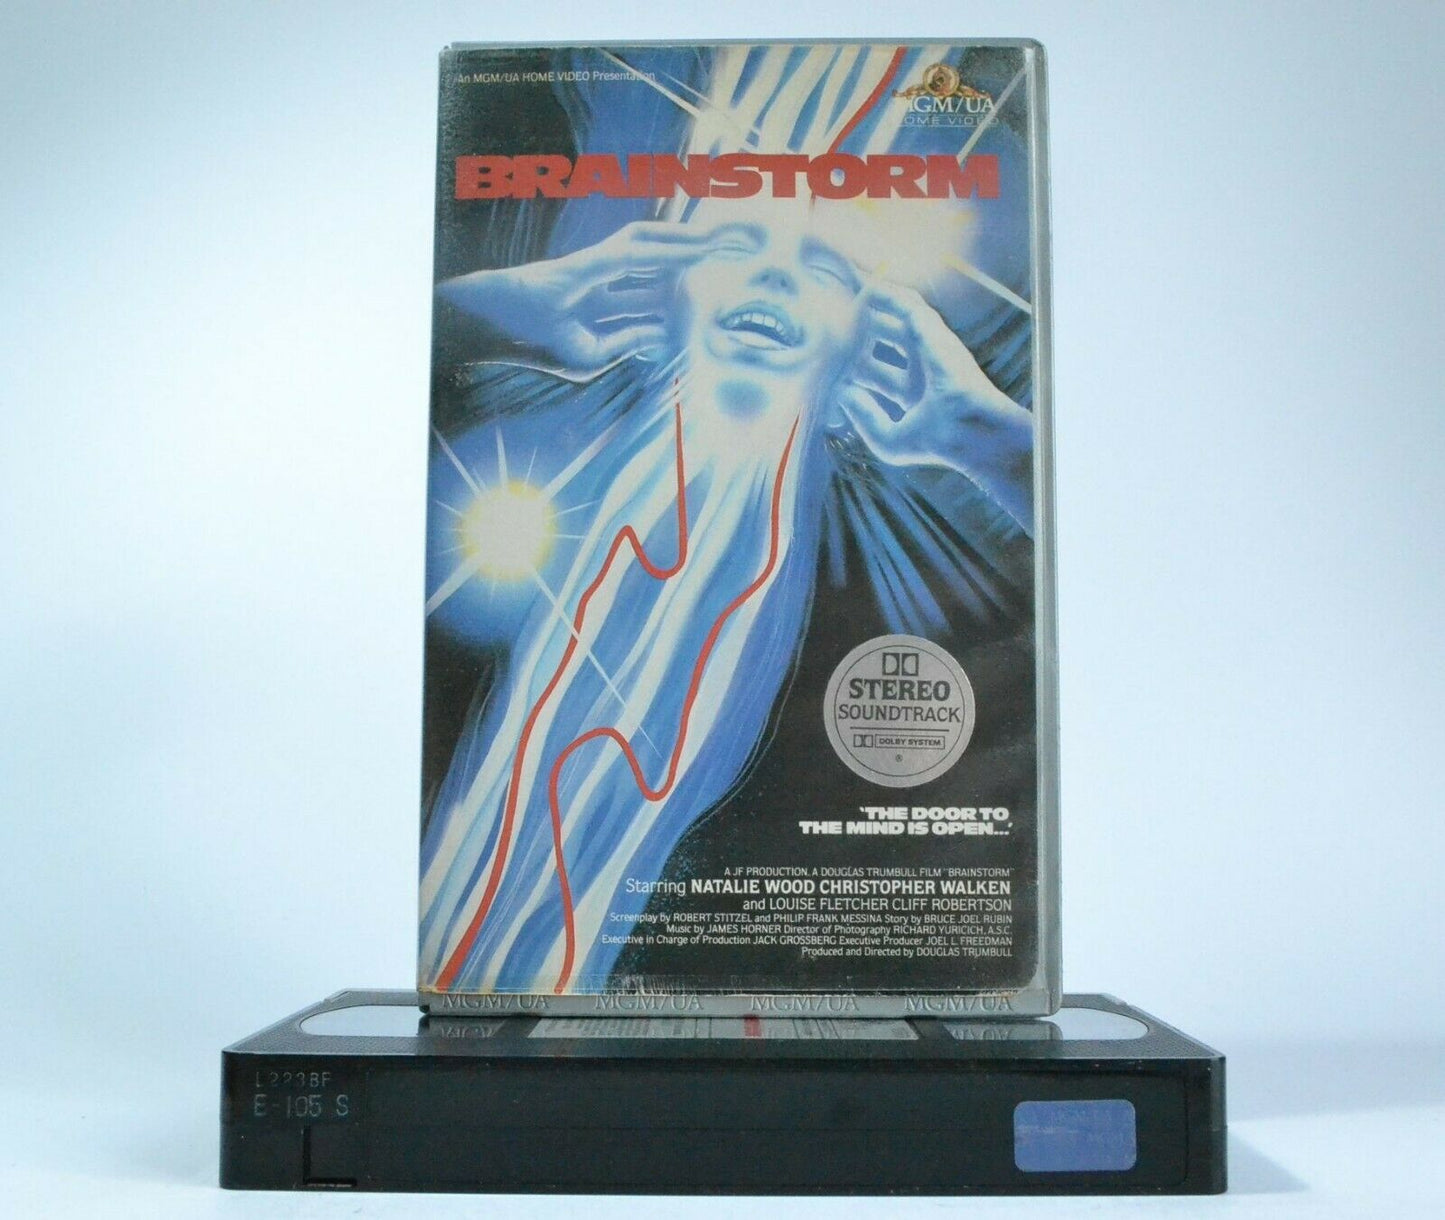 Brainstorm: (1983) MGM/UA Pre-Cert - Sci-Fi - Christopher Walken - Pal VHS-